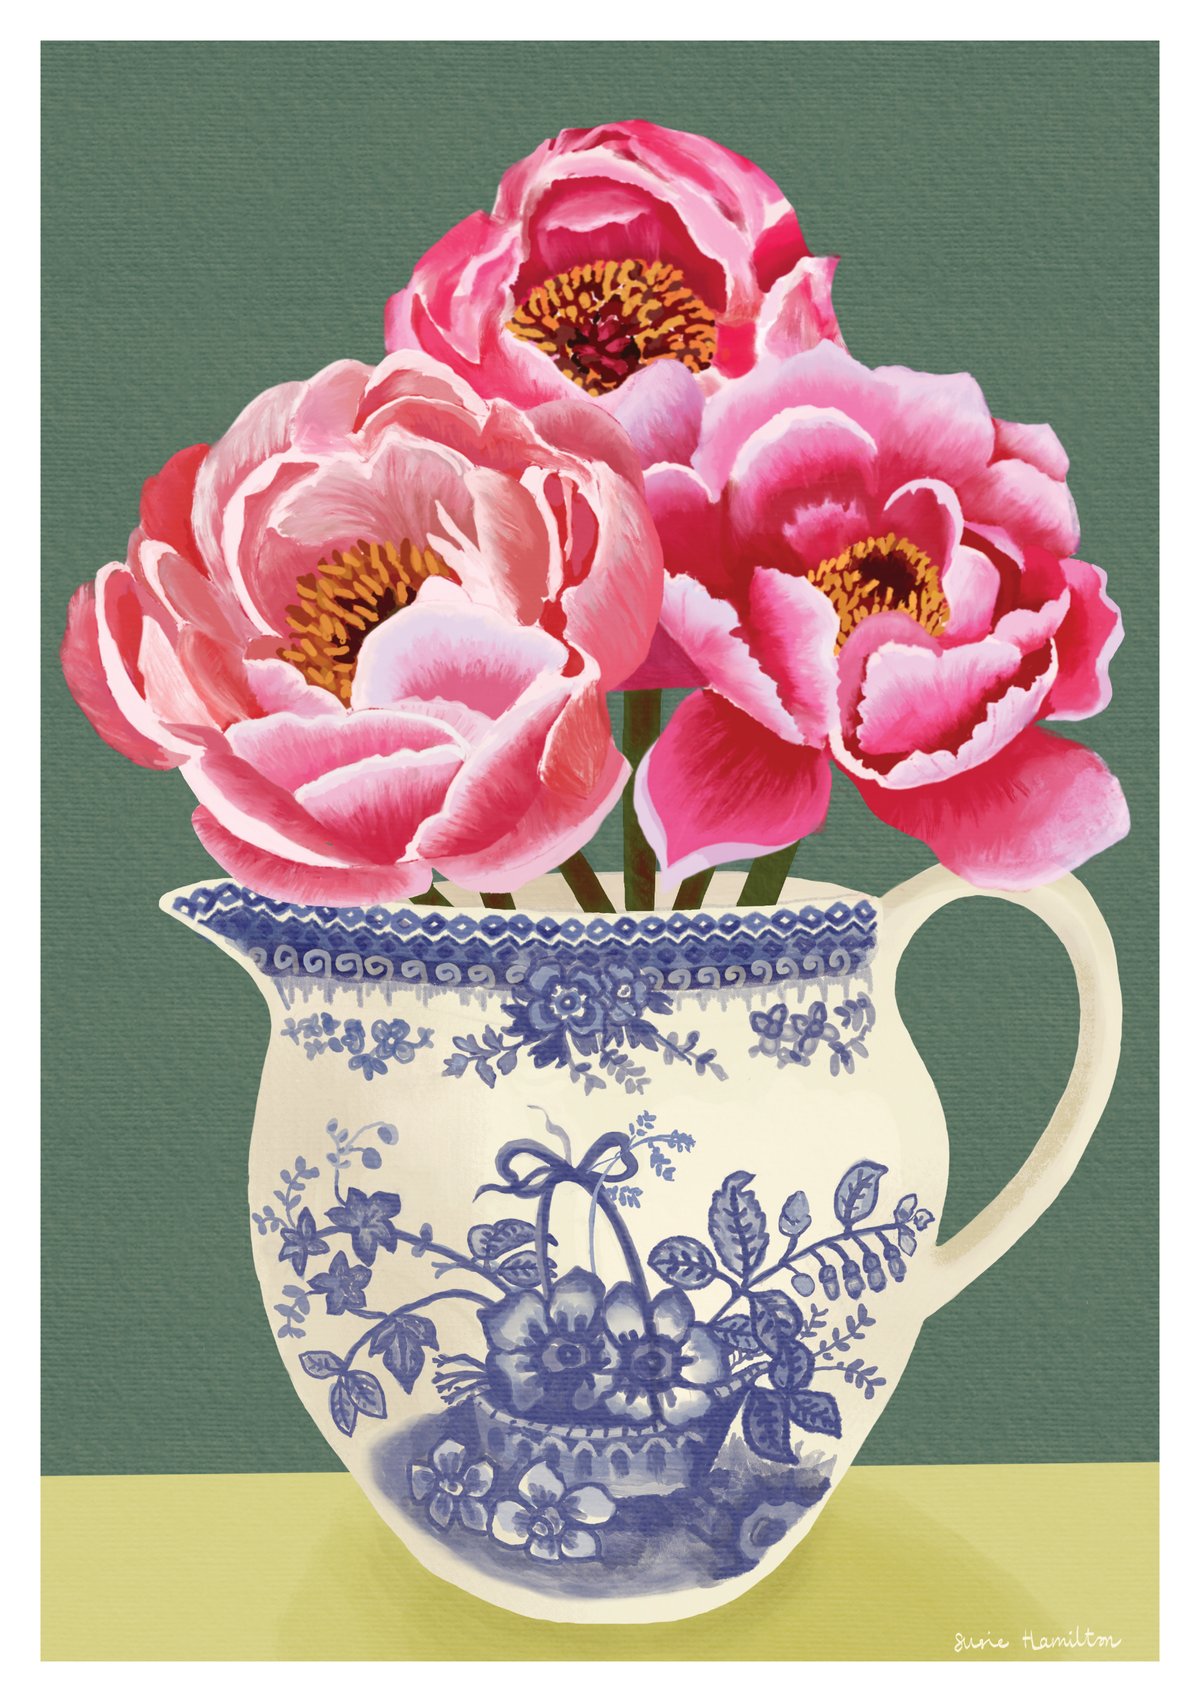 Peonies in Flora Jug Print & Card